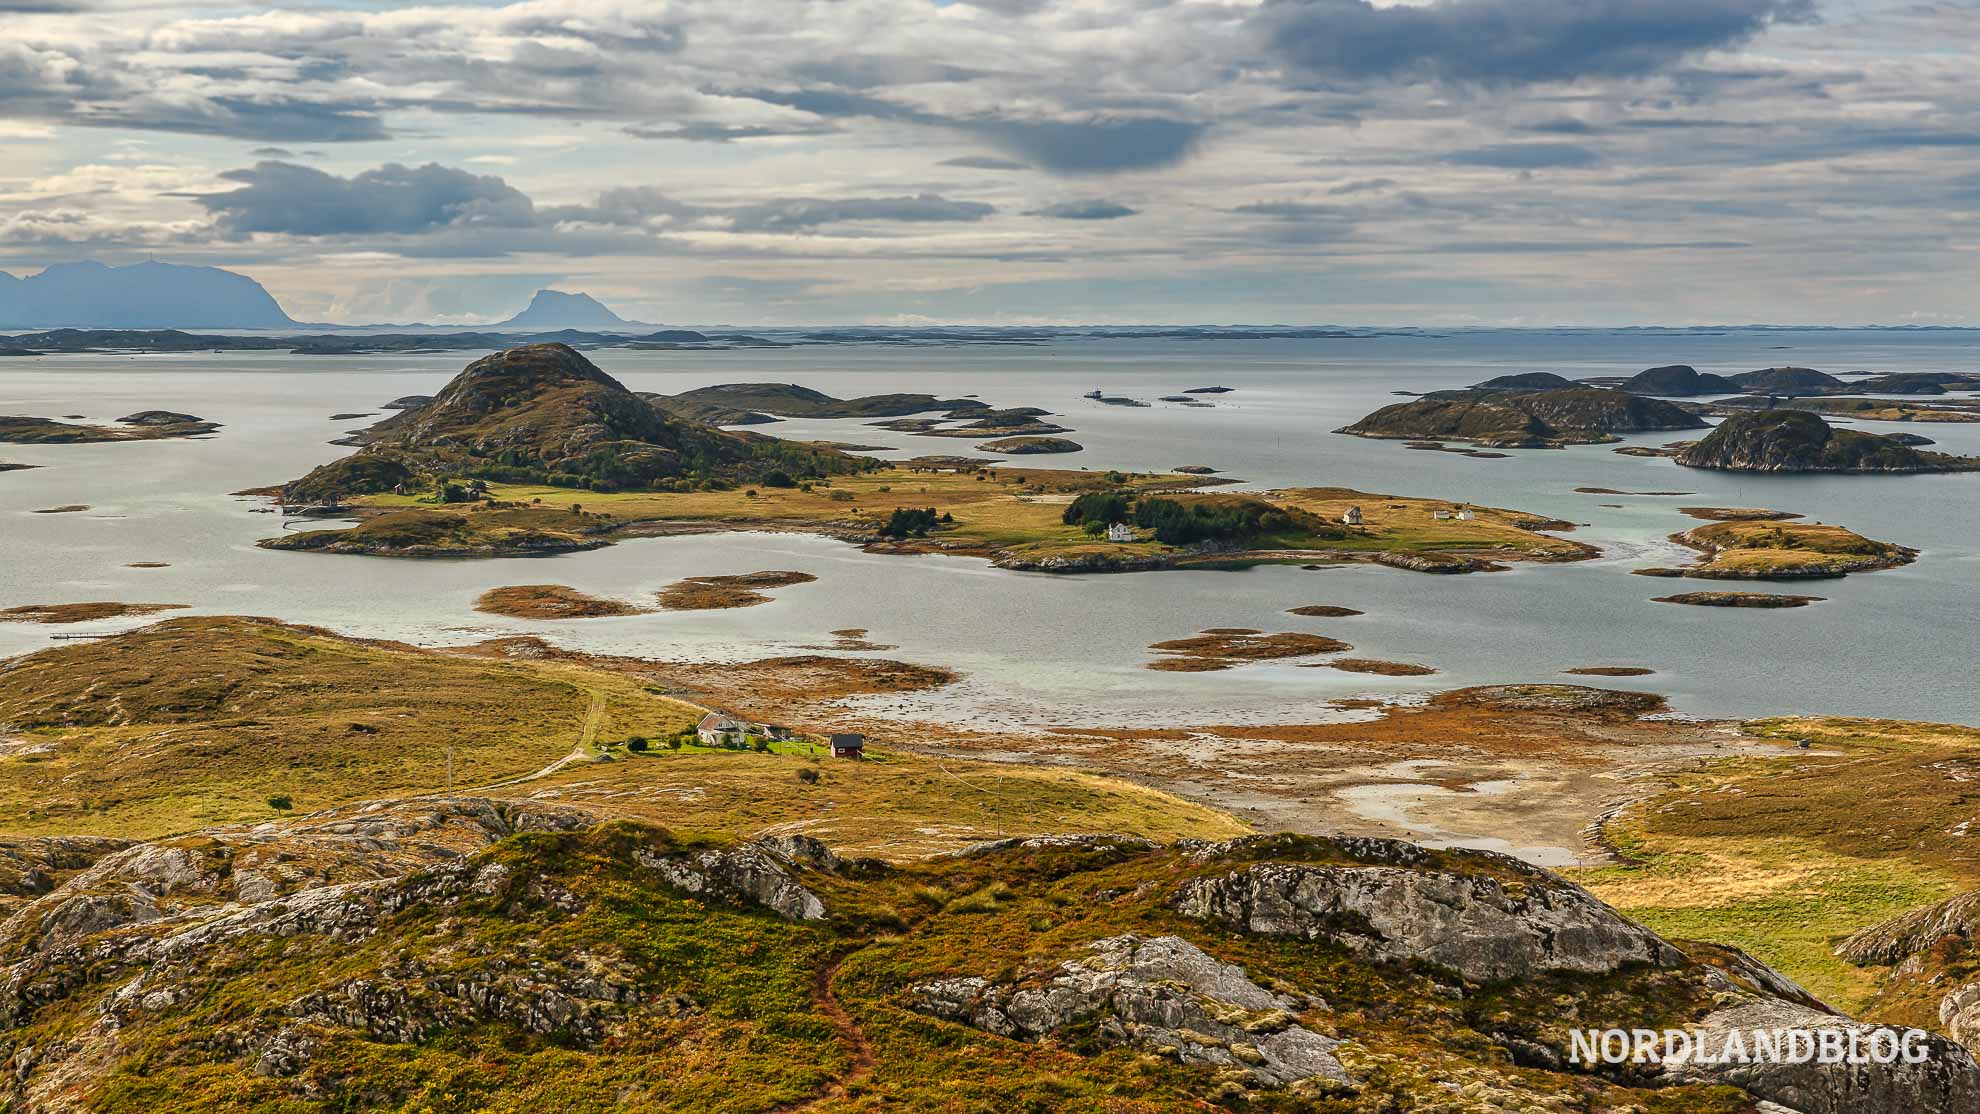 Blick vom Stortuva auf der Insel Heroy an der Helgelandskysten